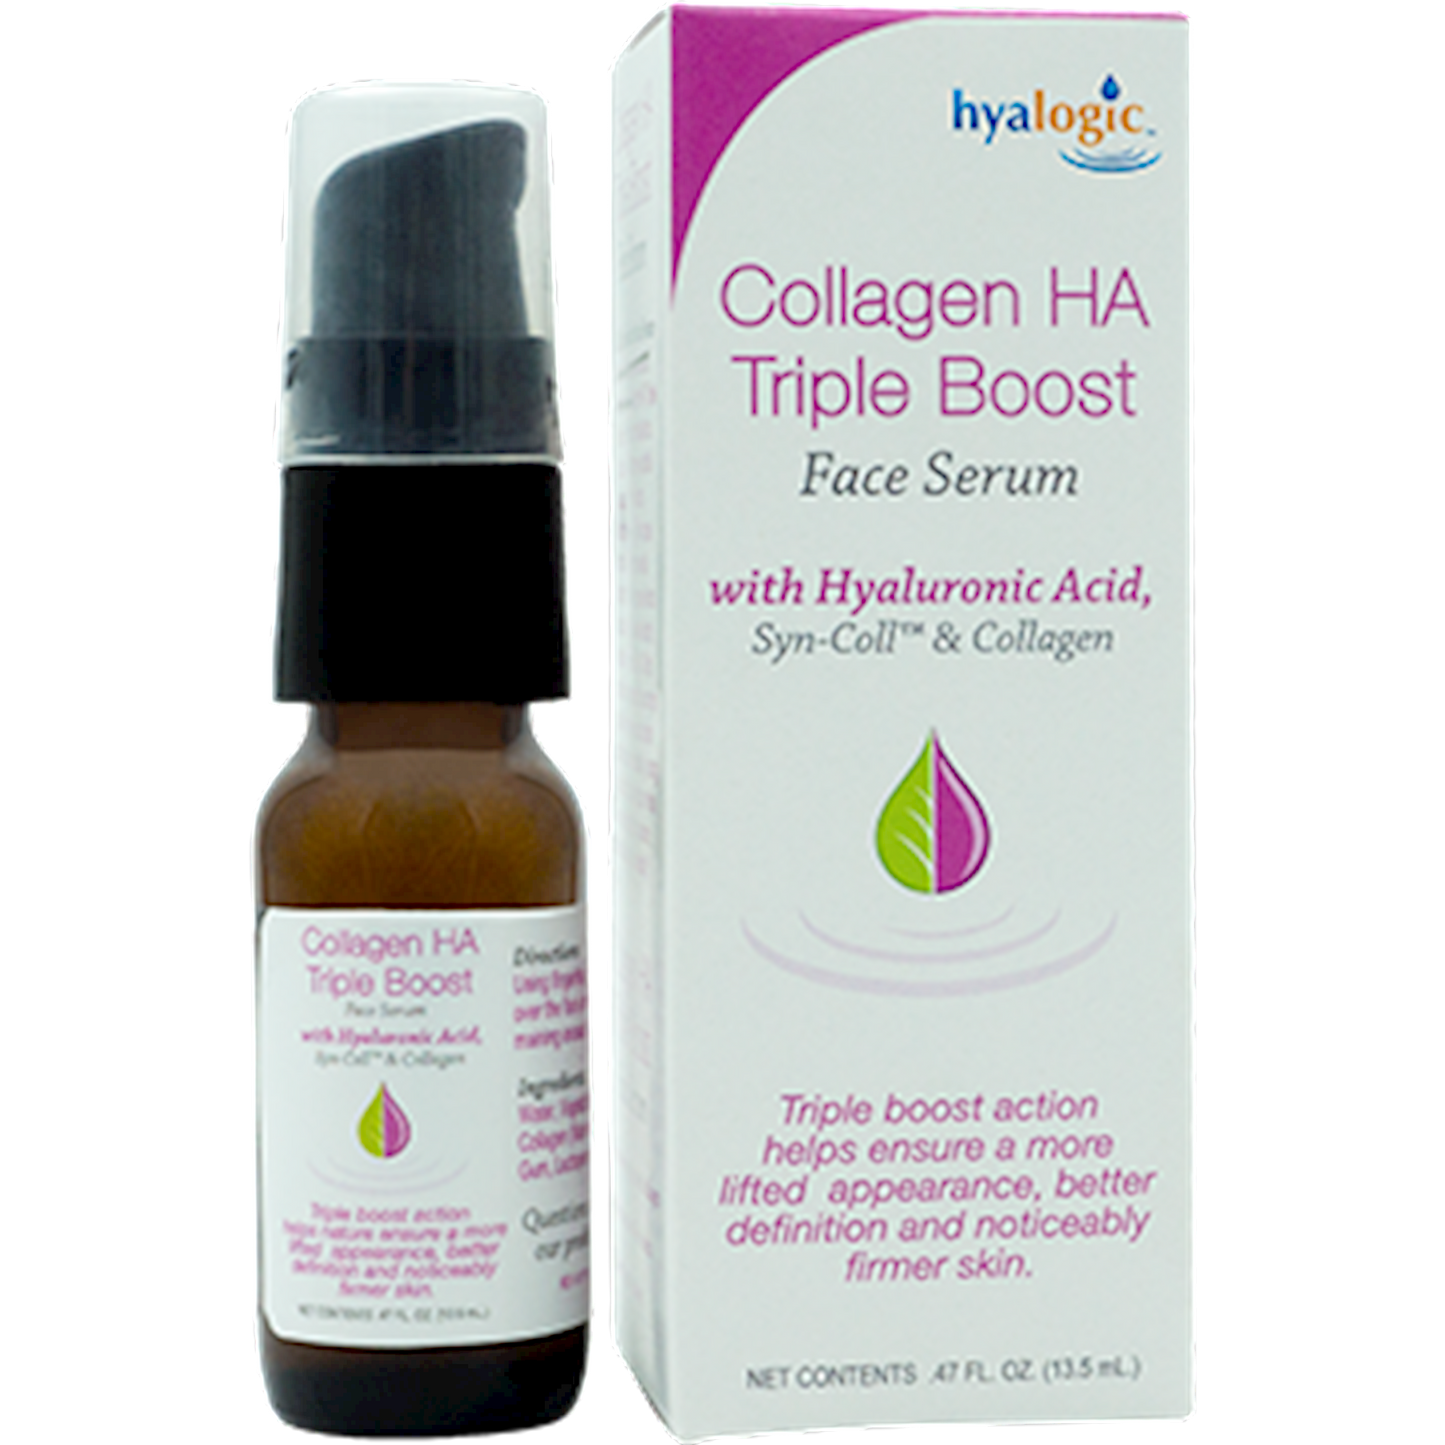 Collagen Serum